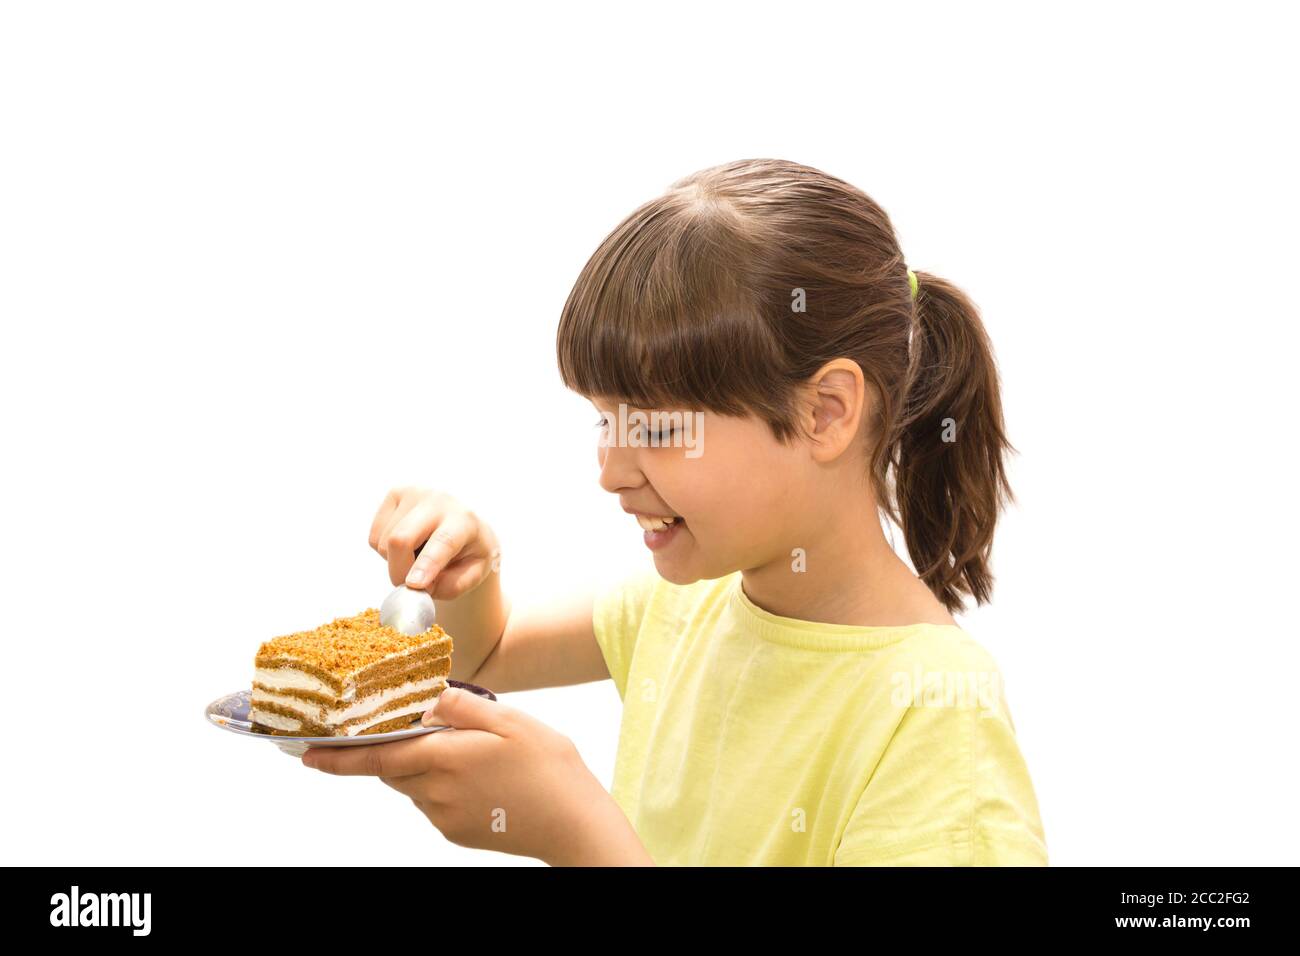 Girl eating cake. Isolated on white background. Stock Photo